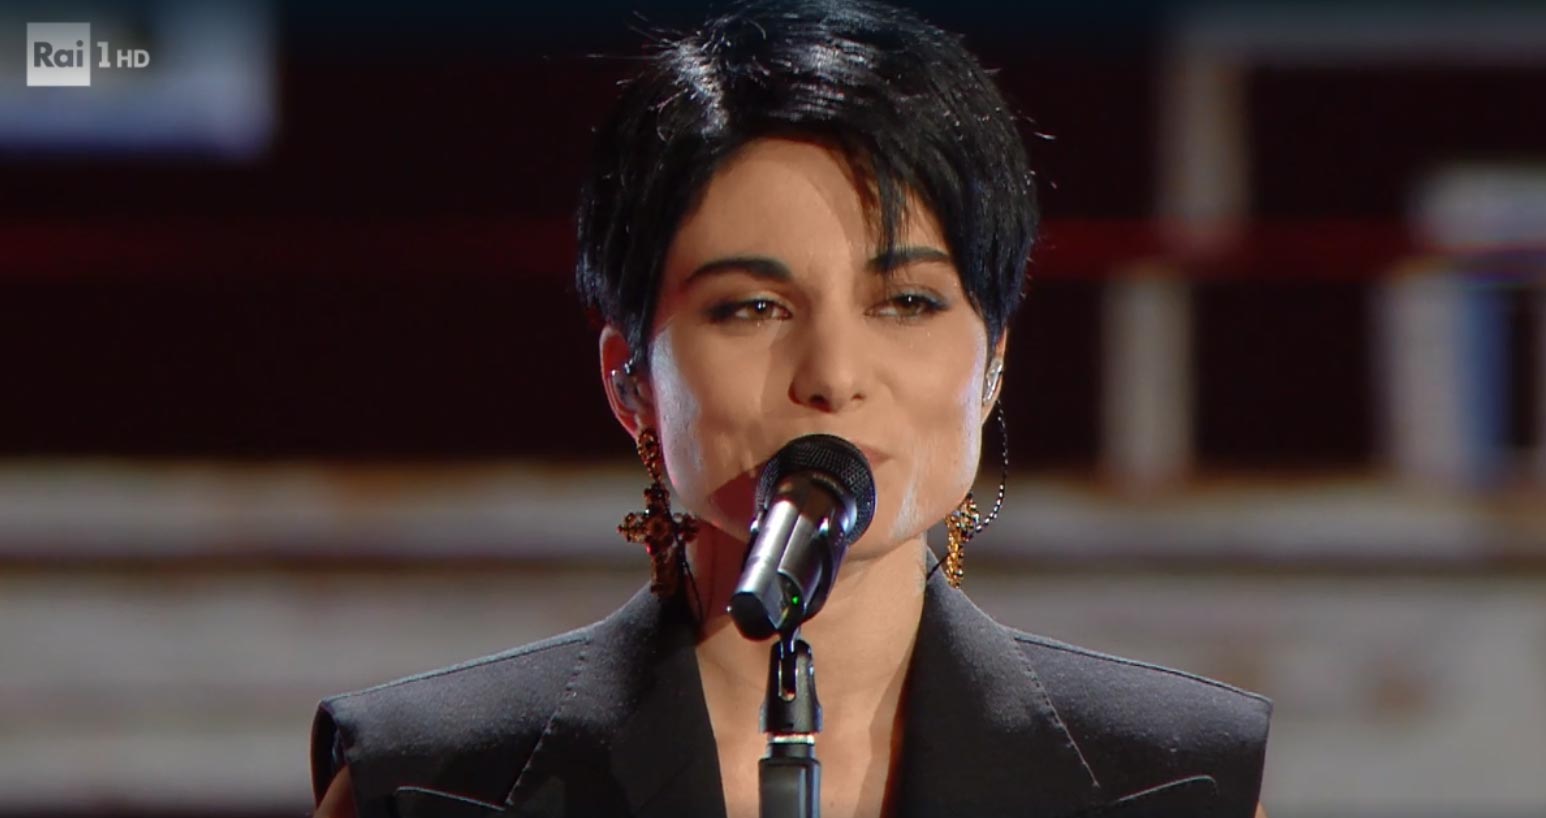 Giordana Angi canta 'Come mia madre' a Sanremo 2020